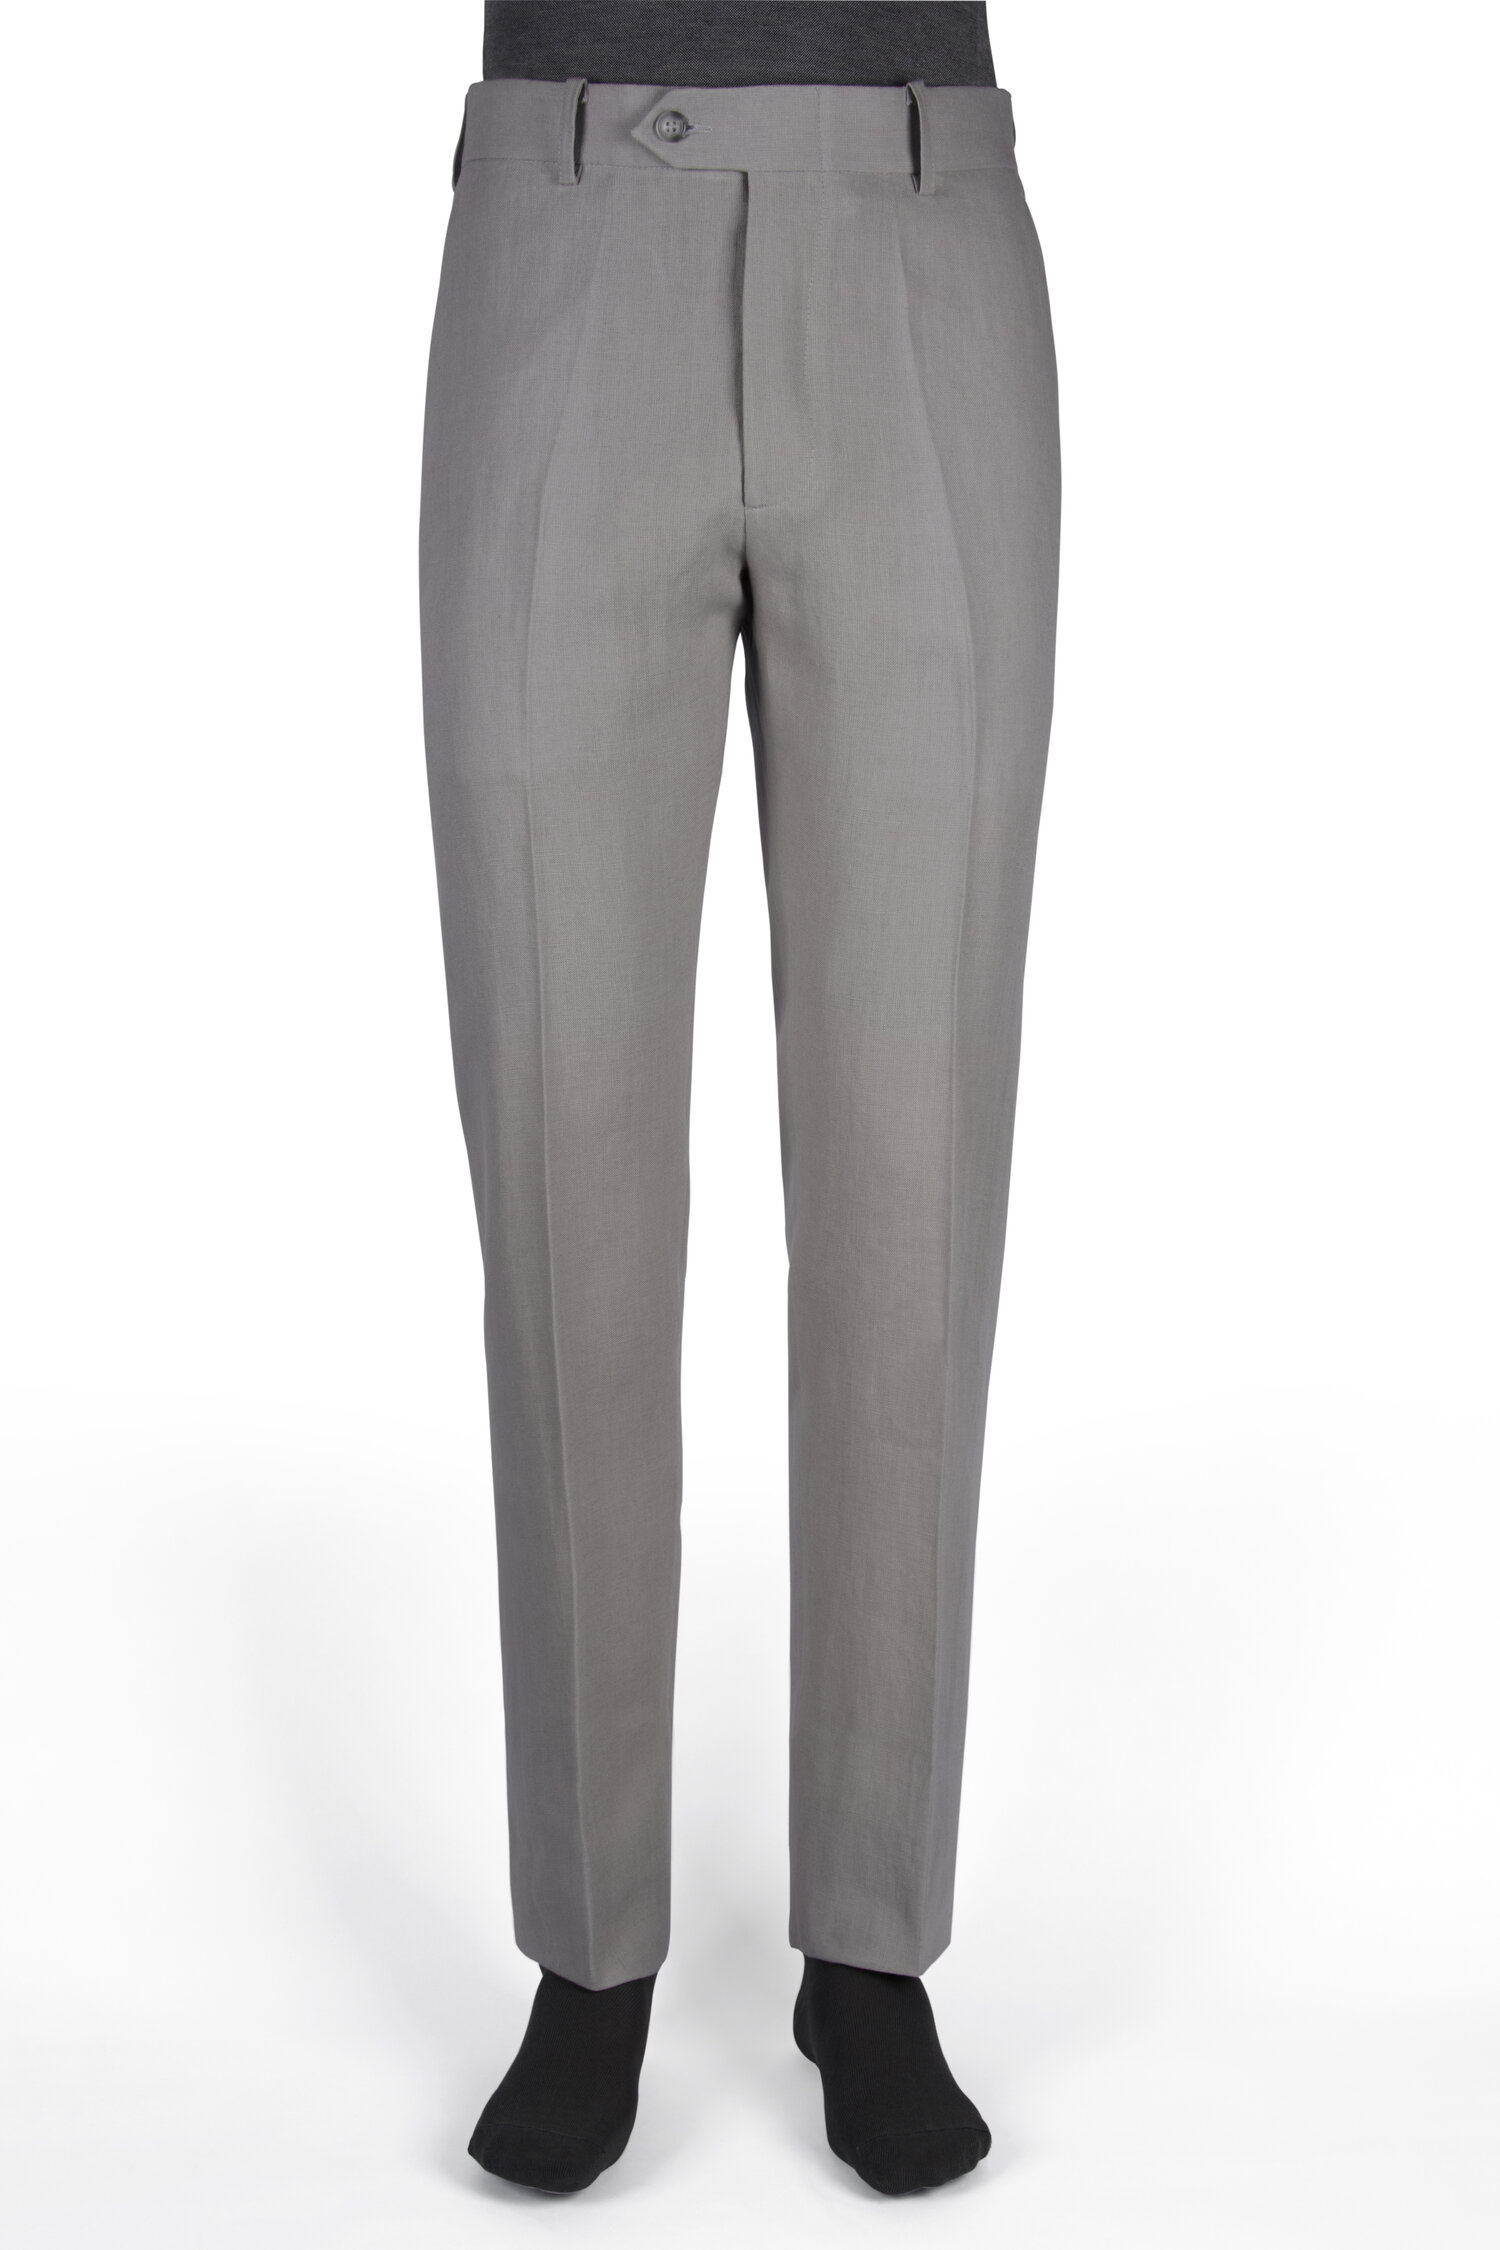 Anciano George Eliot gravedad Pantalon de vestir slim fit color gris plata — Casa del Lino